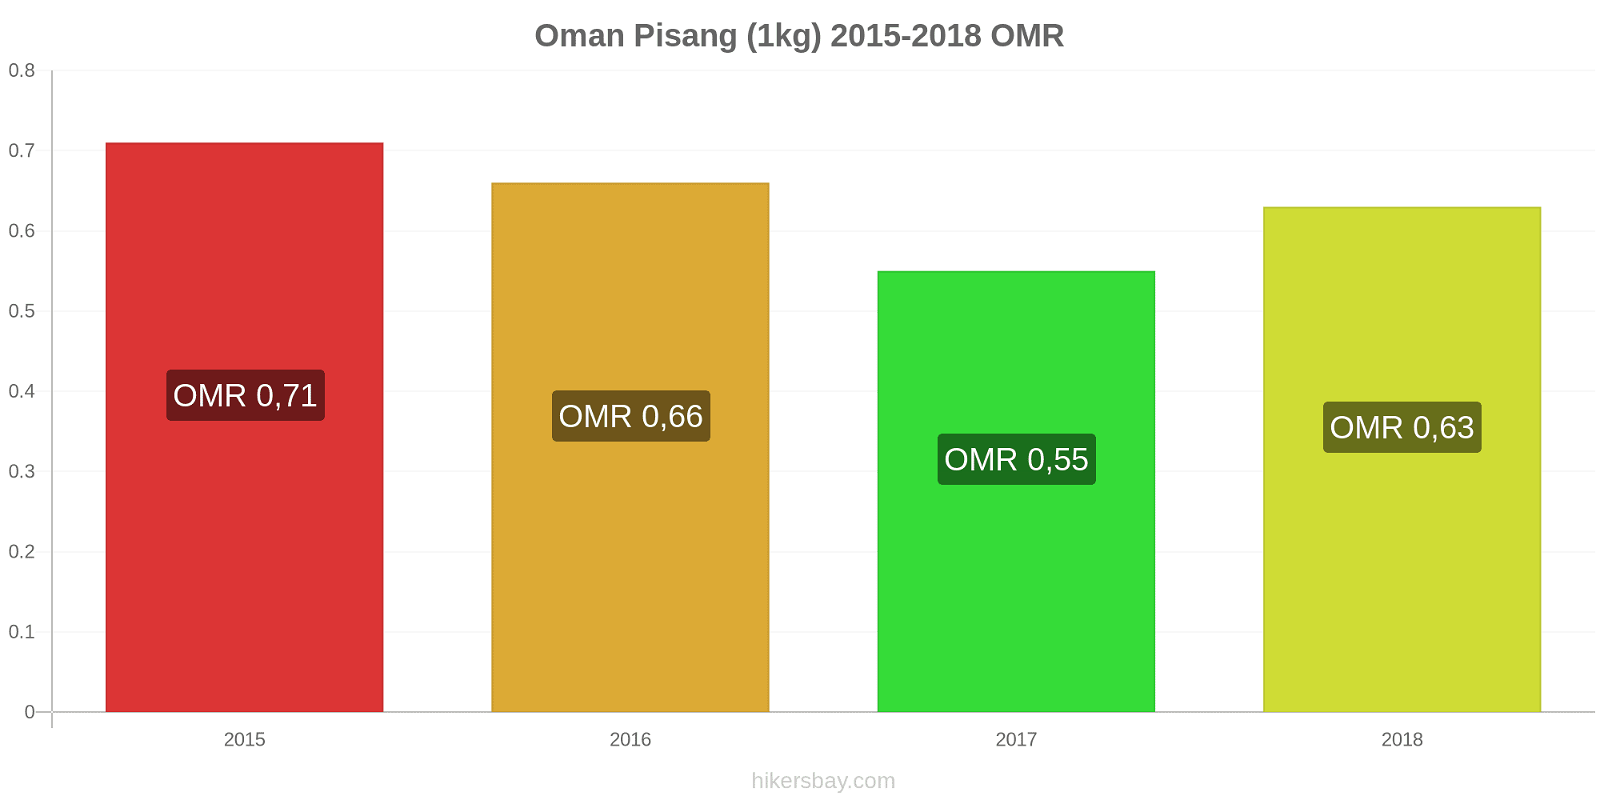 Oman perubahan harga Pisang (1kg) hikersbay.com